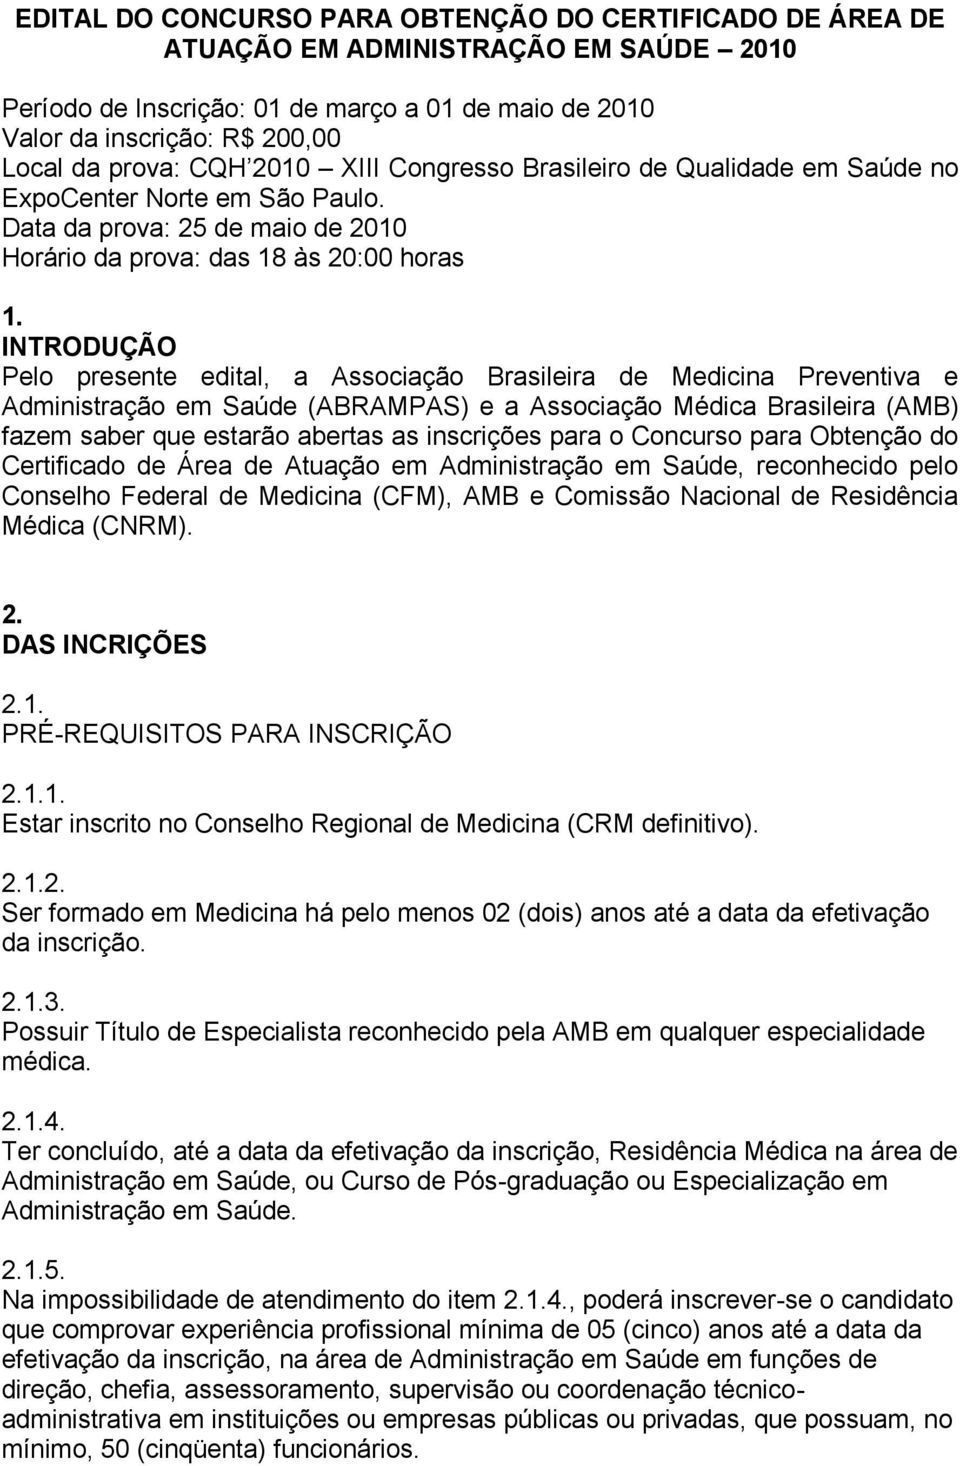 INTRODUÇÃO Pelo presente edital, a Associação Brasileira de Medicina Preventiva e Administração em Saúde (ABRAMPAS) e a Associação Médica Brasileira (AMB) fazem saber que estarão abertas as